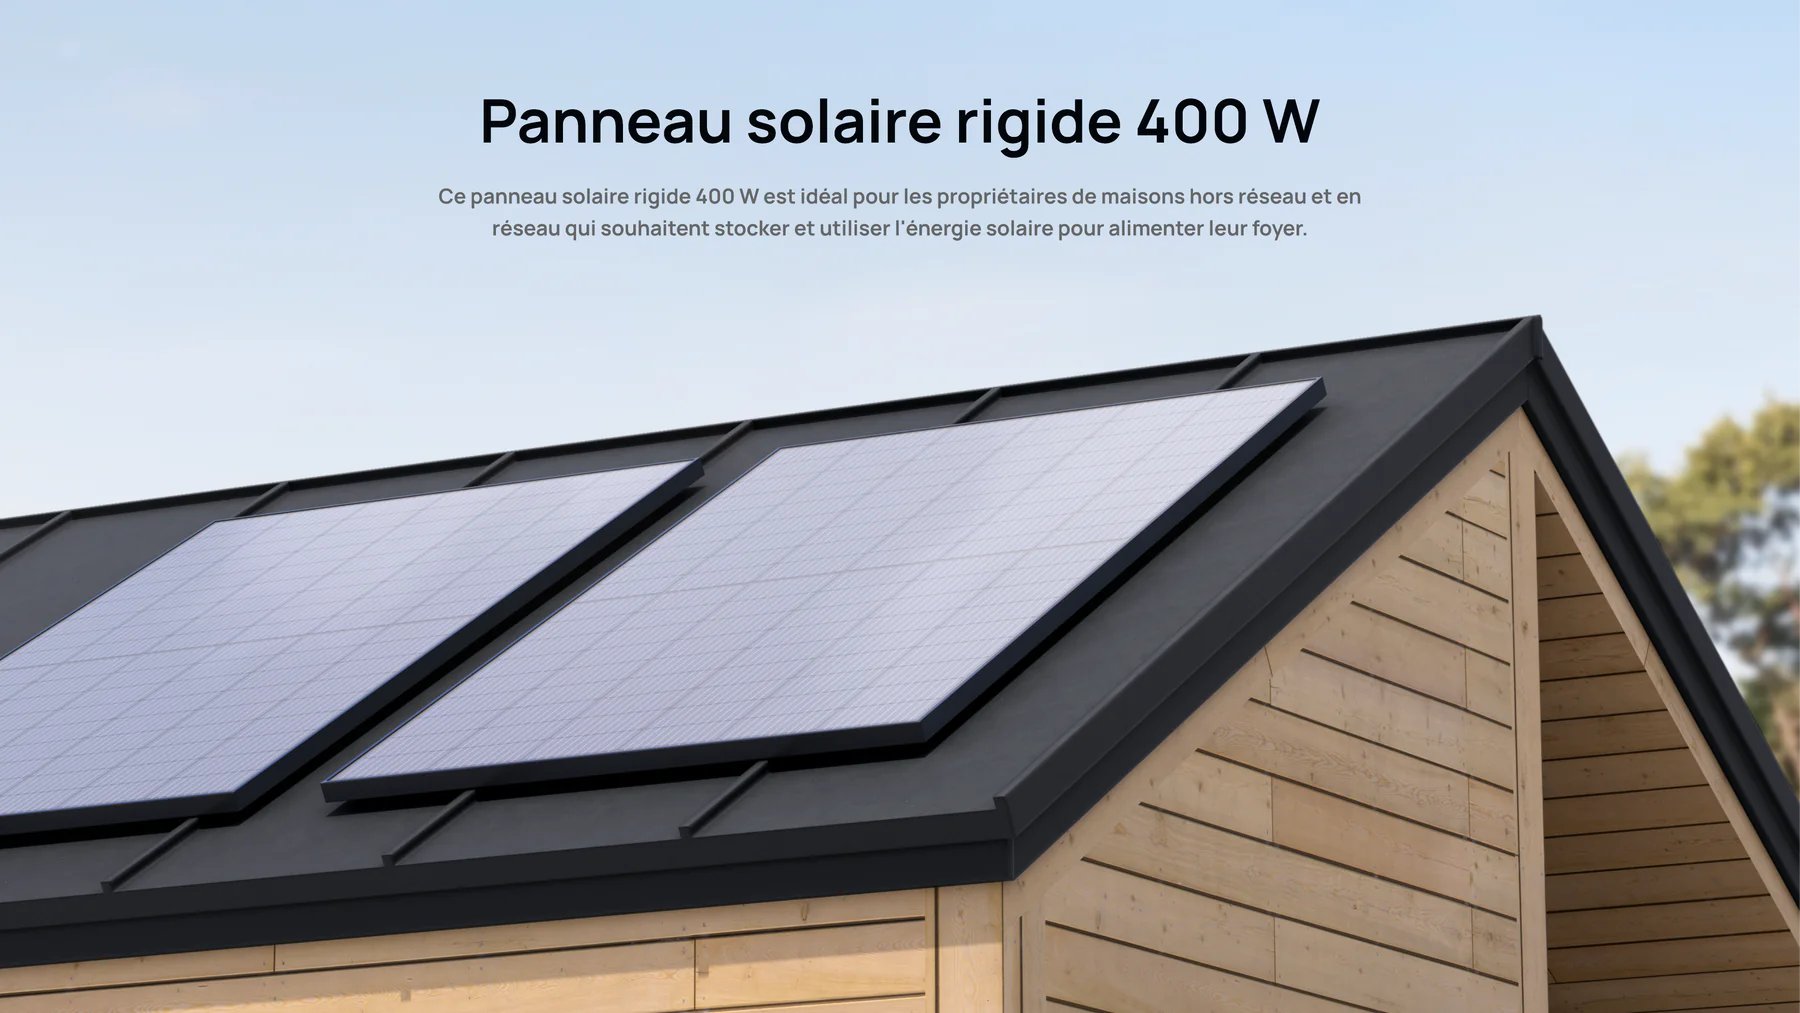 Panneau solaire 400W Ecoflow sur toit maison